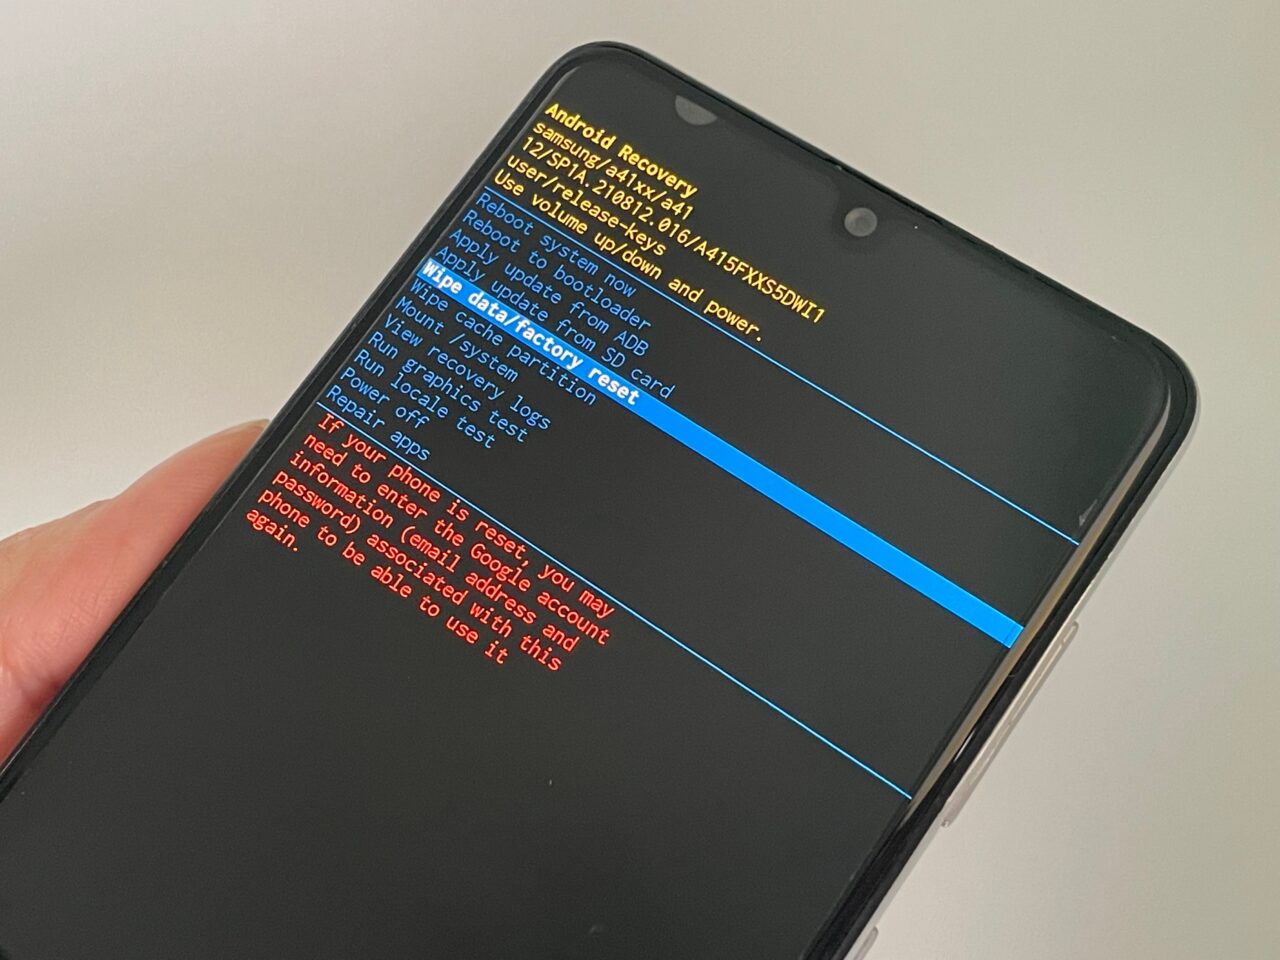 Smartfon trzymany w ręce, z włączonym ekranem pokazującym menu odzyskiwania systemu Android z różnymi opcjami i komunikatami w języku angielskim.